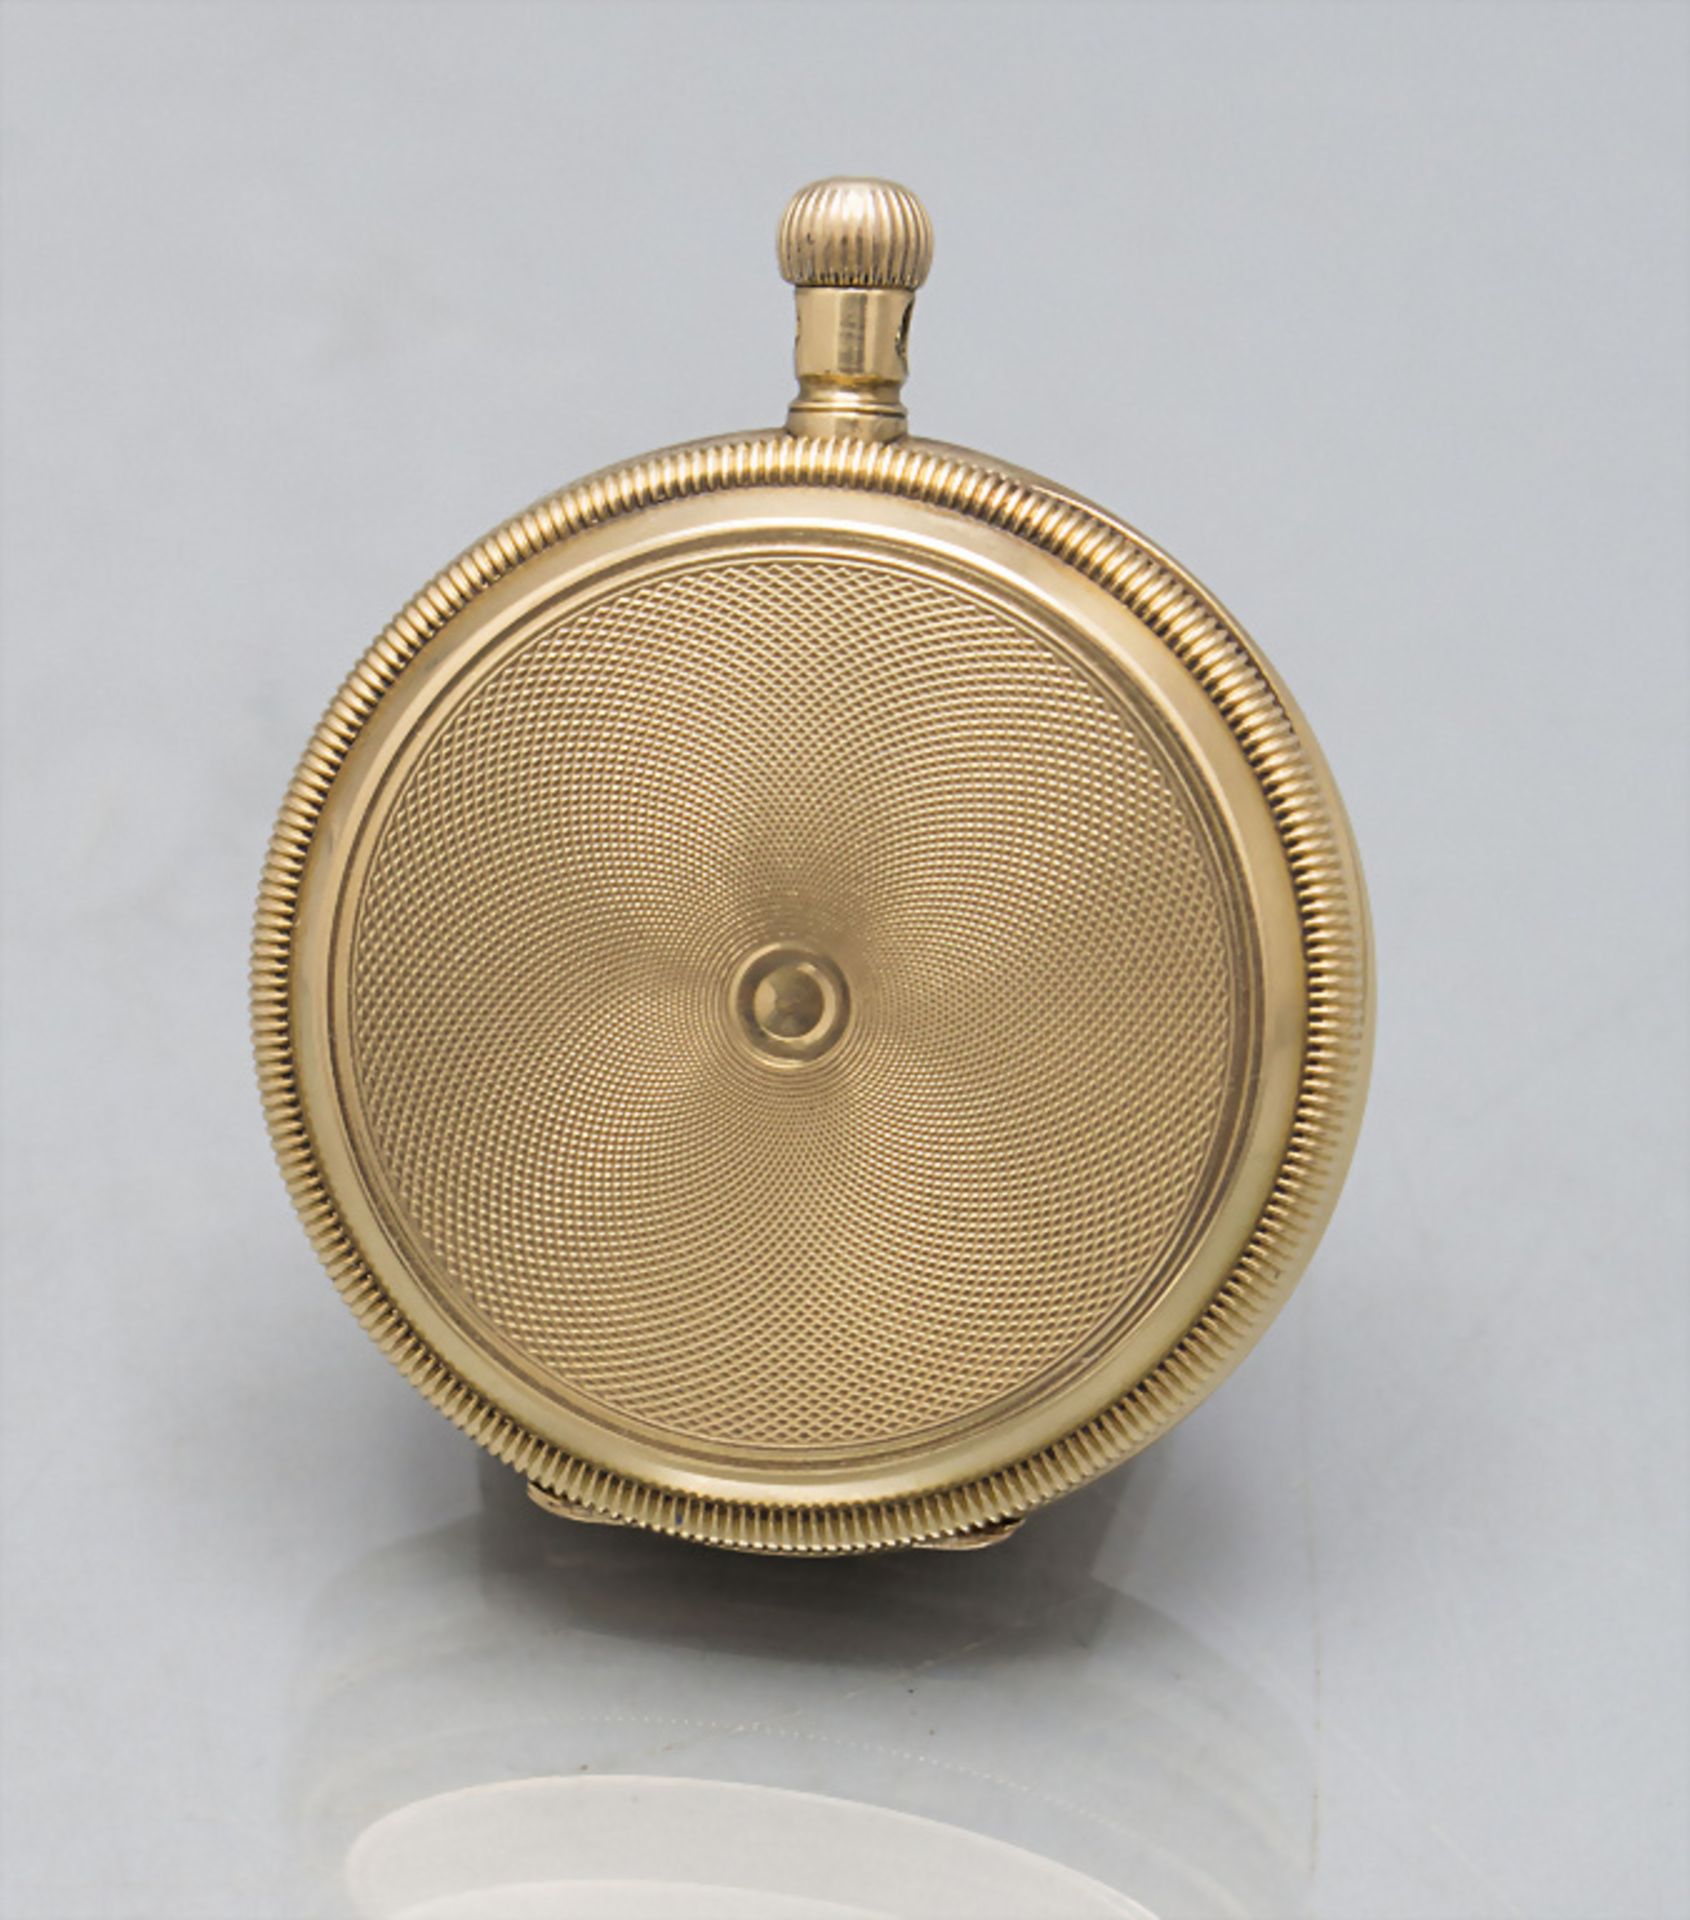 Savonette Taschenuhr / An 18 ct gold pocket watch, Tiffany & Co., New York, um 1910 - Image 6 of 7